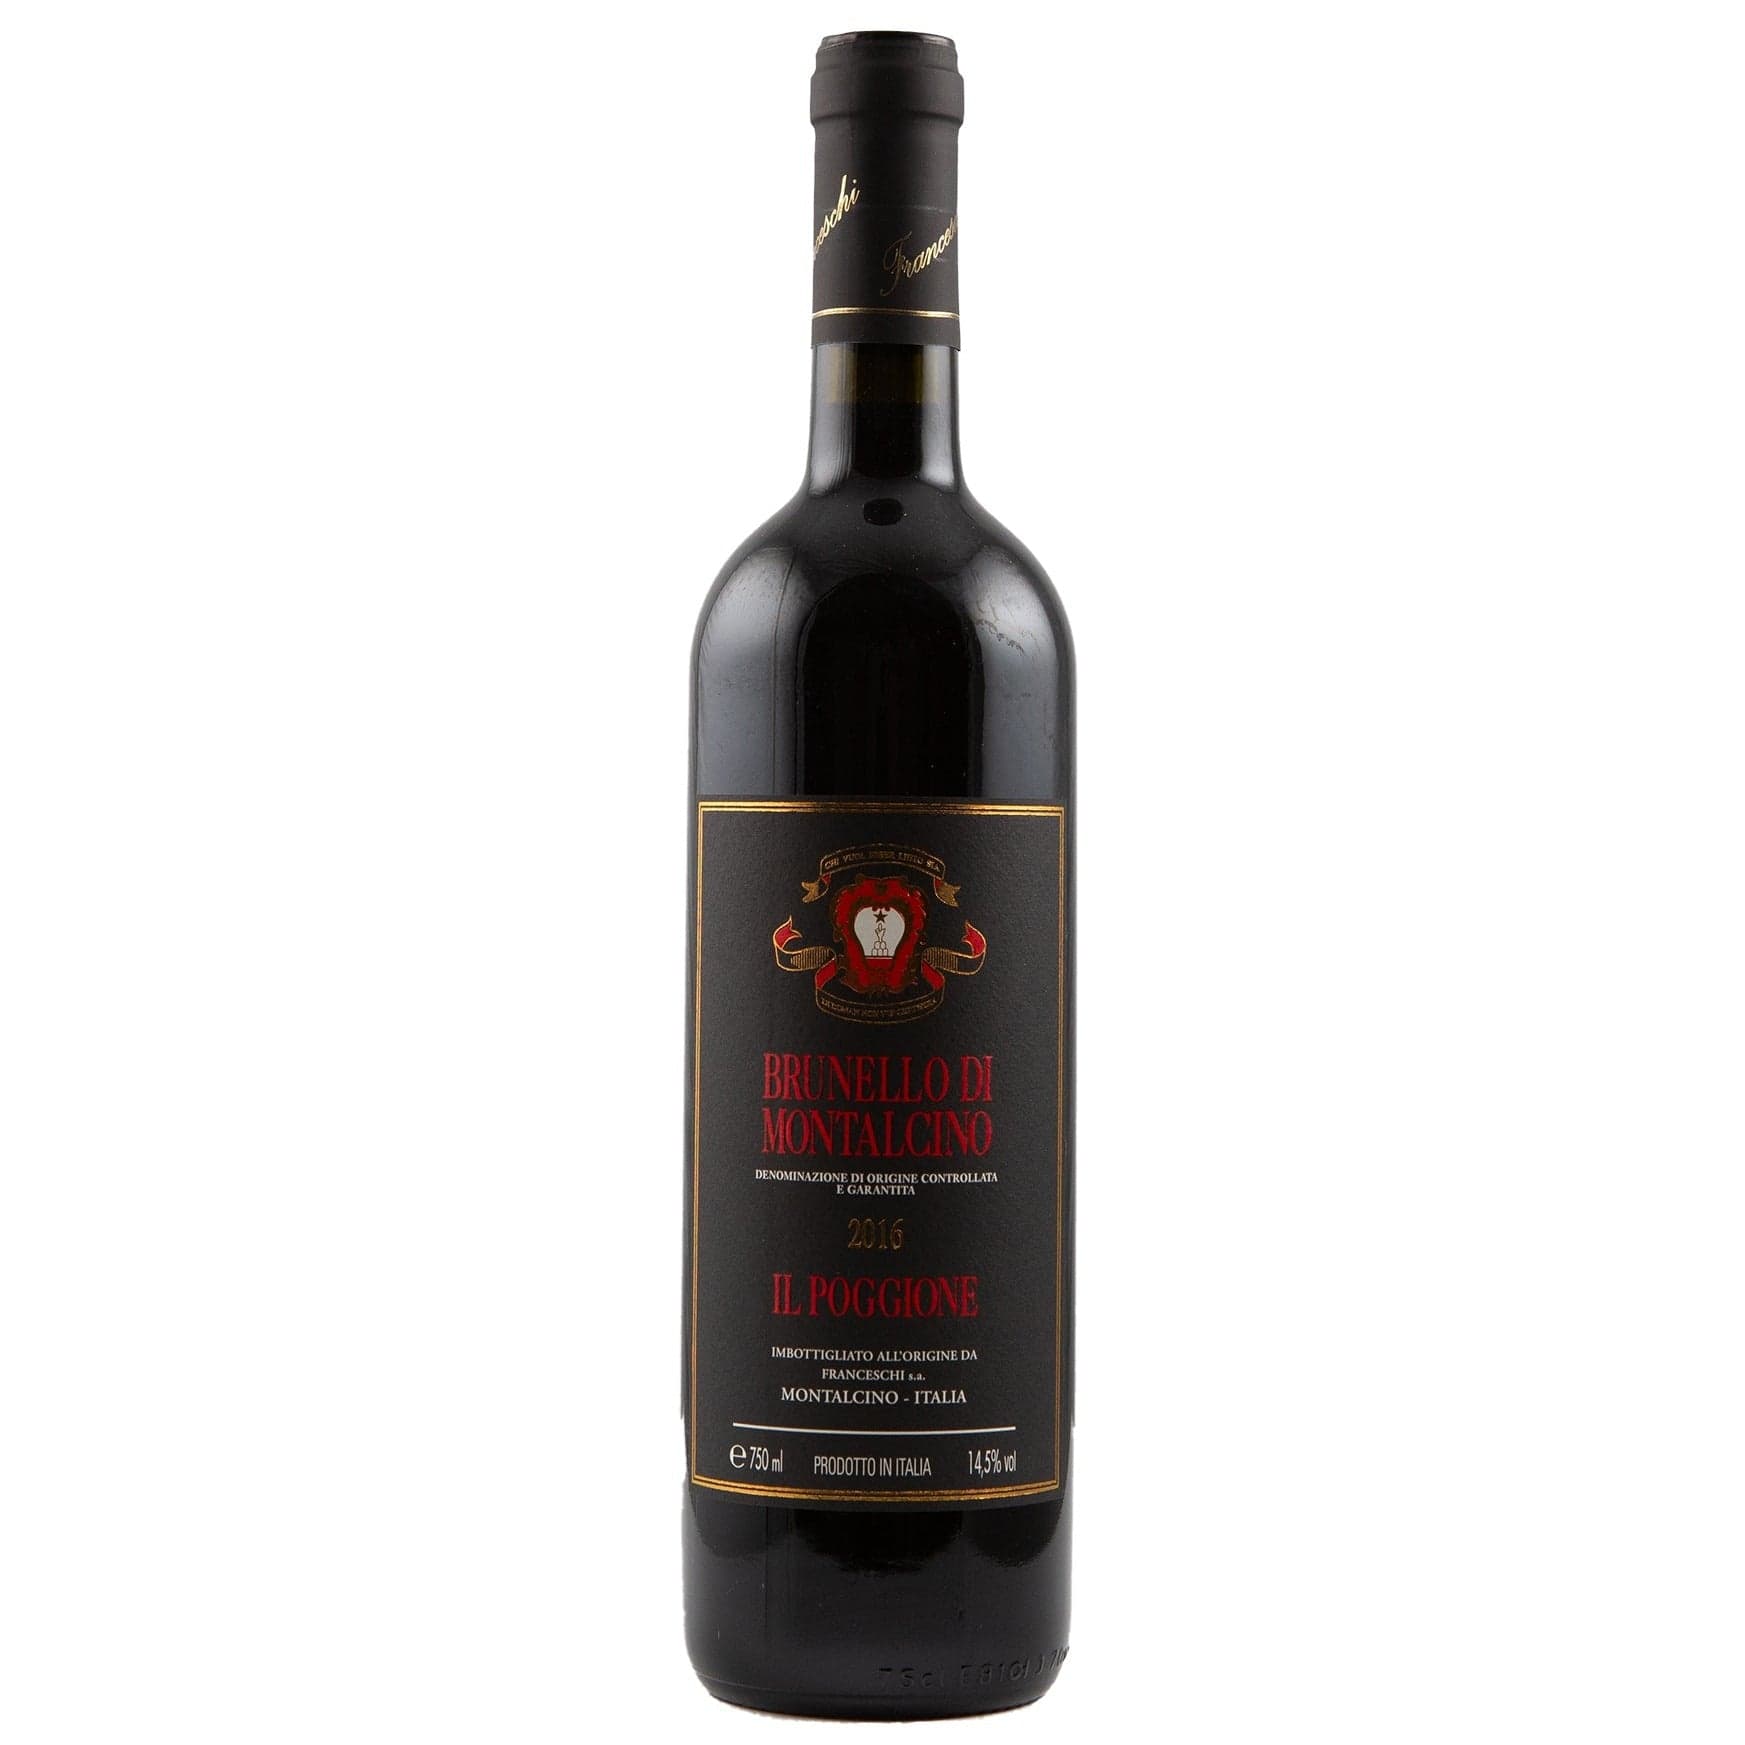 Single bottle of Red wine Il Poggione, DOCG, Brunello di Montalcino, 2016 100% Sangiovese